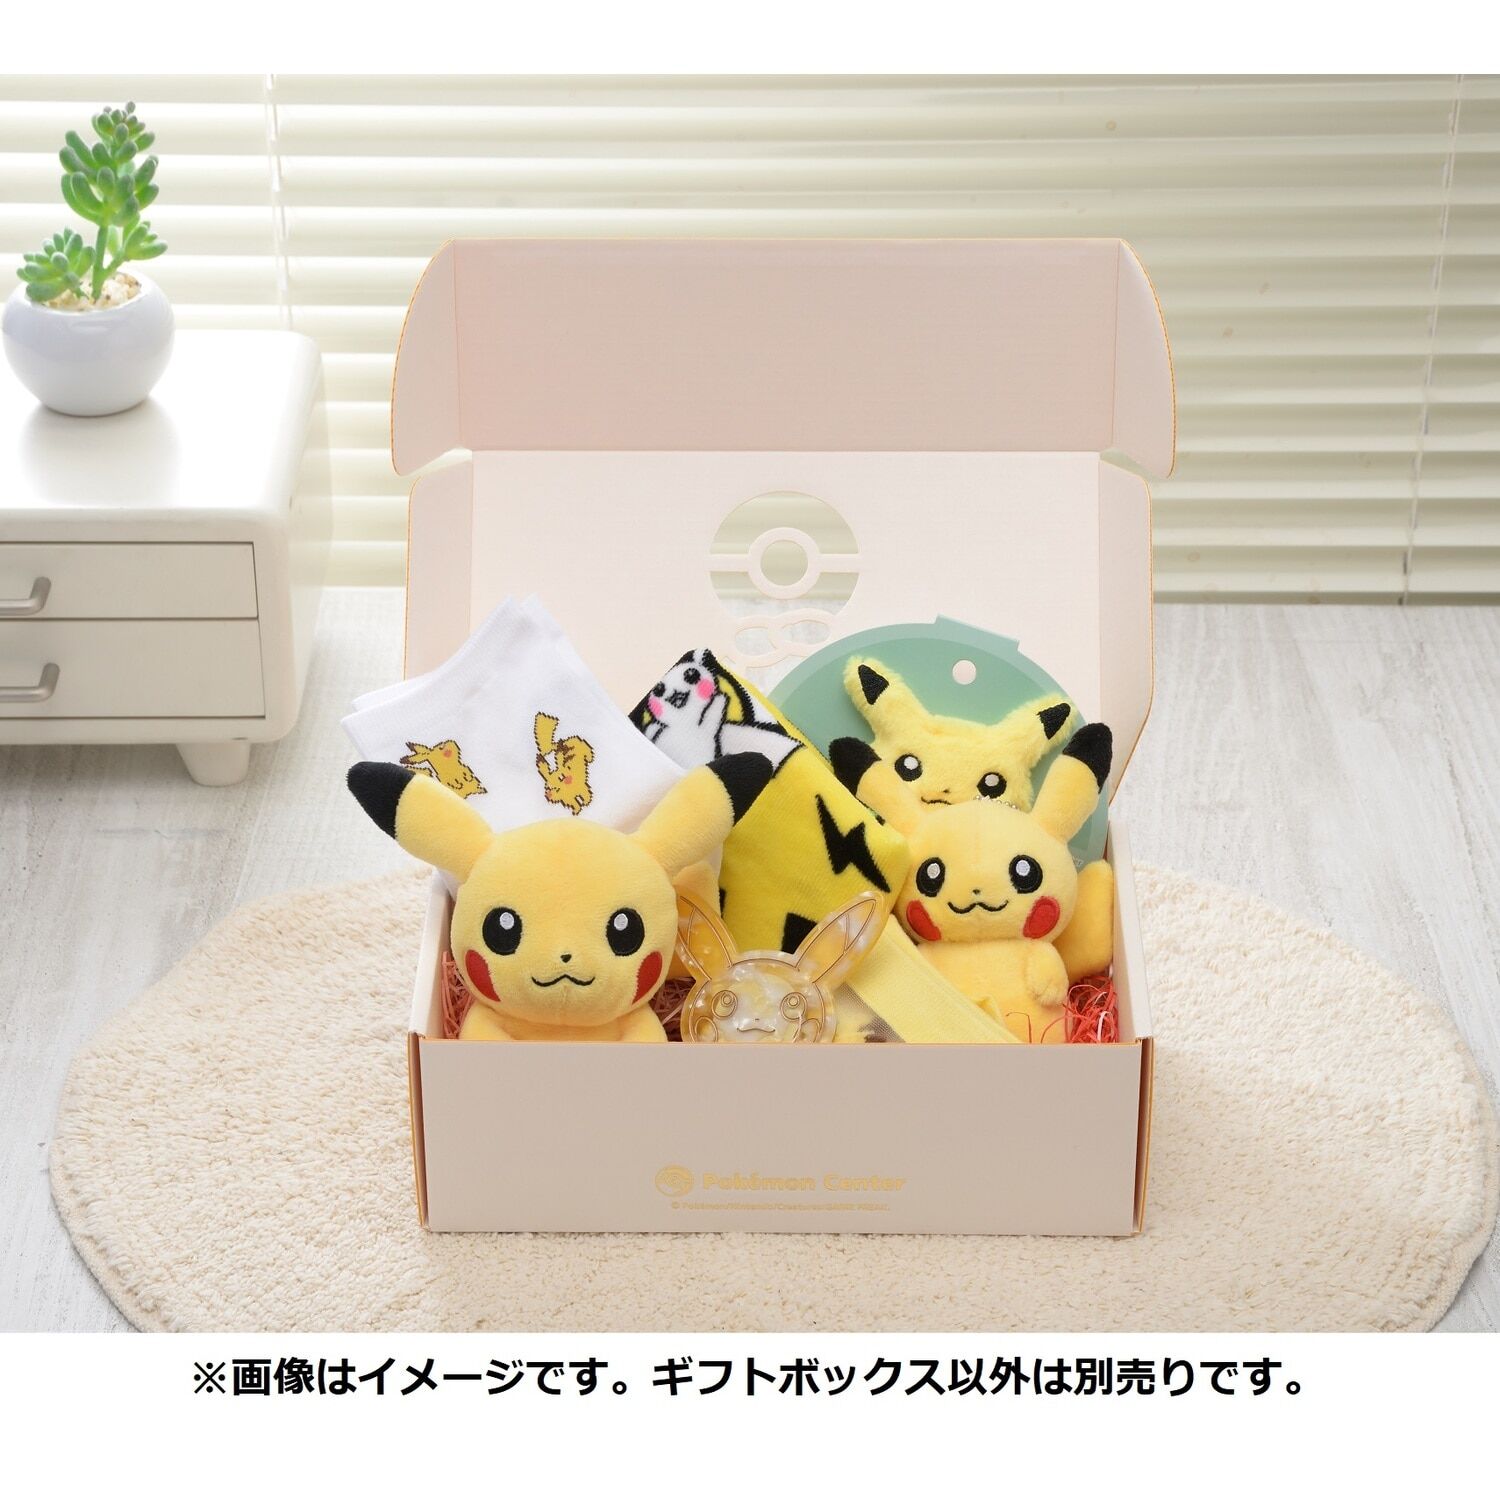 Pokémon Center Original Gift Box S